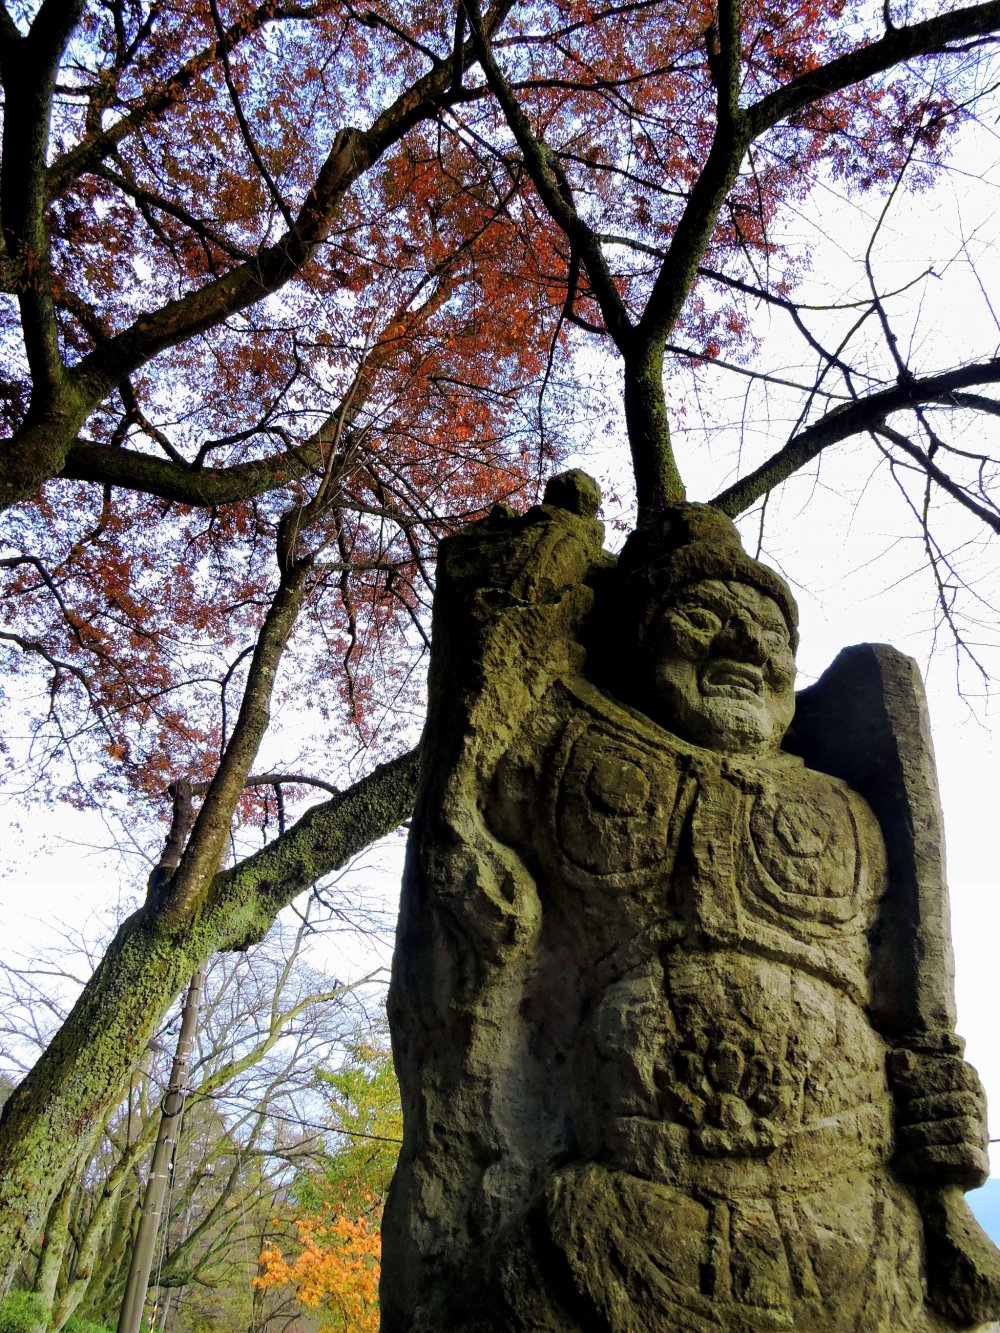 니시야마 공원 기도길 옆에 서 있는 후도묘오 동상